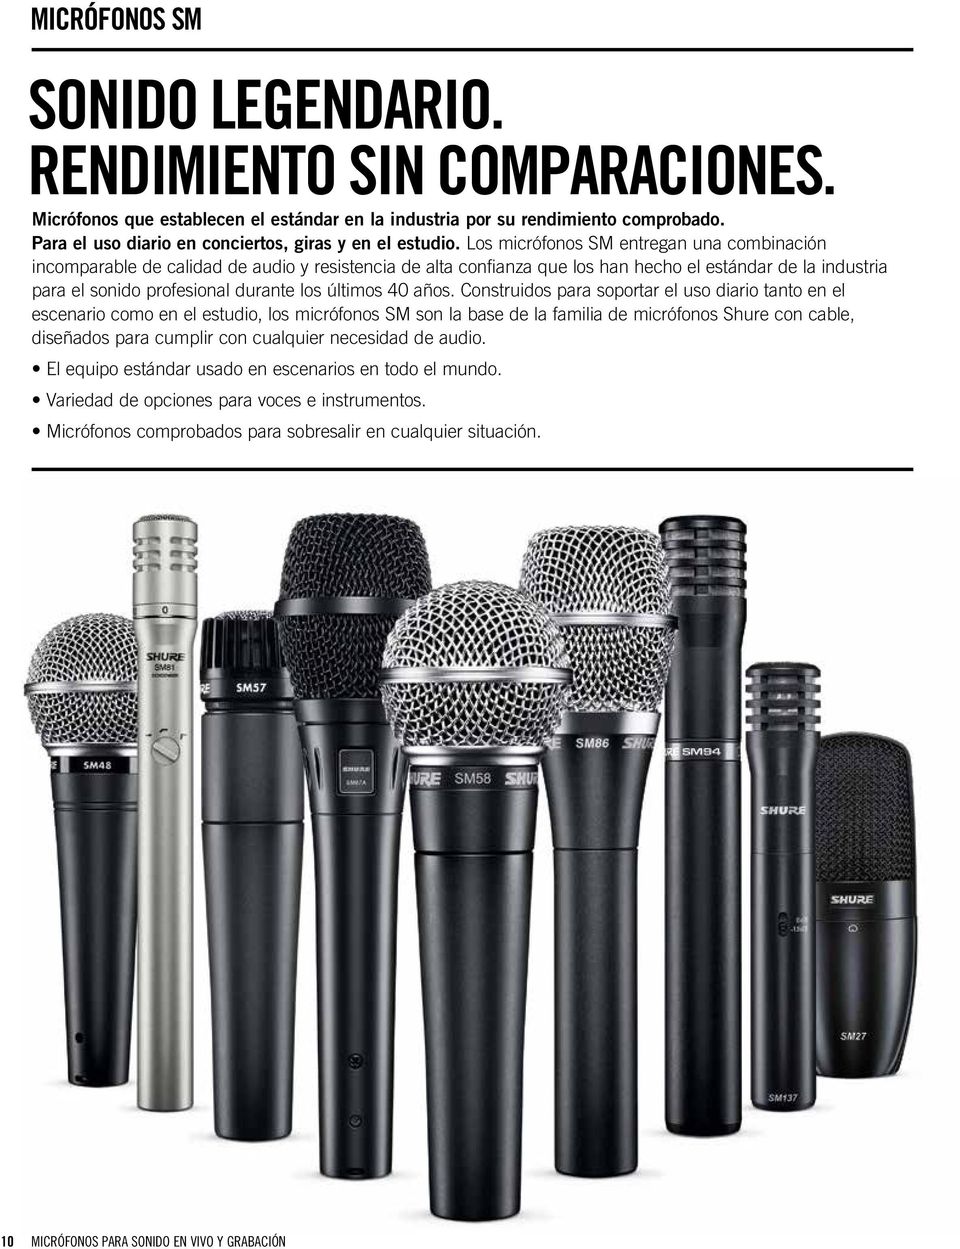 Los micrófonos SM entregan una combinación incomparable de calidad de audio y resistencia de alta confianza que los han hecho el estándar de la industria para el sonido profesional durante los